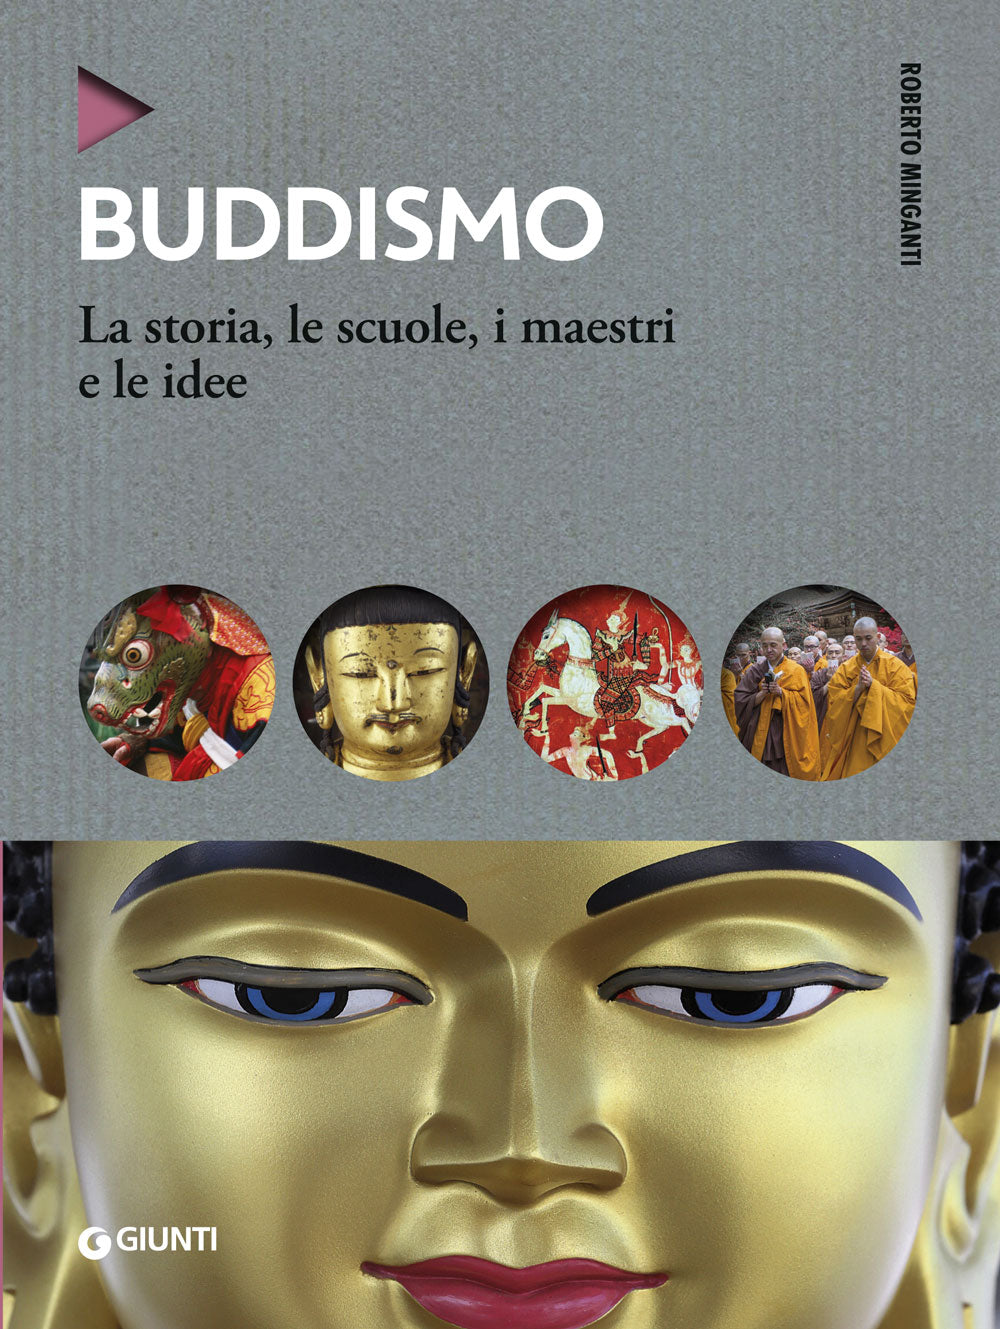 Buddismo::La storia, le scuole, i maestri e le idee